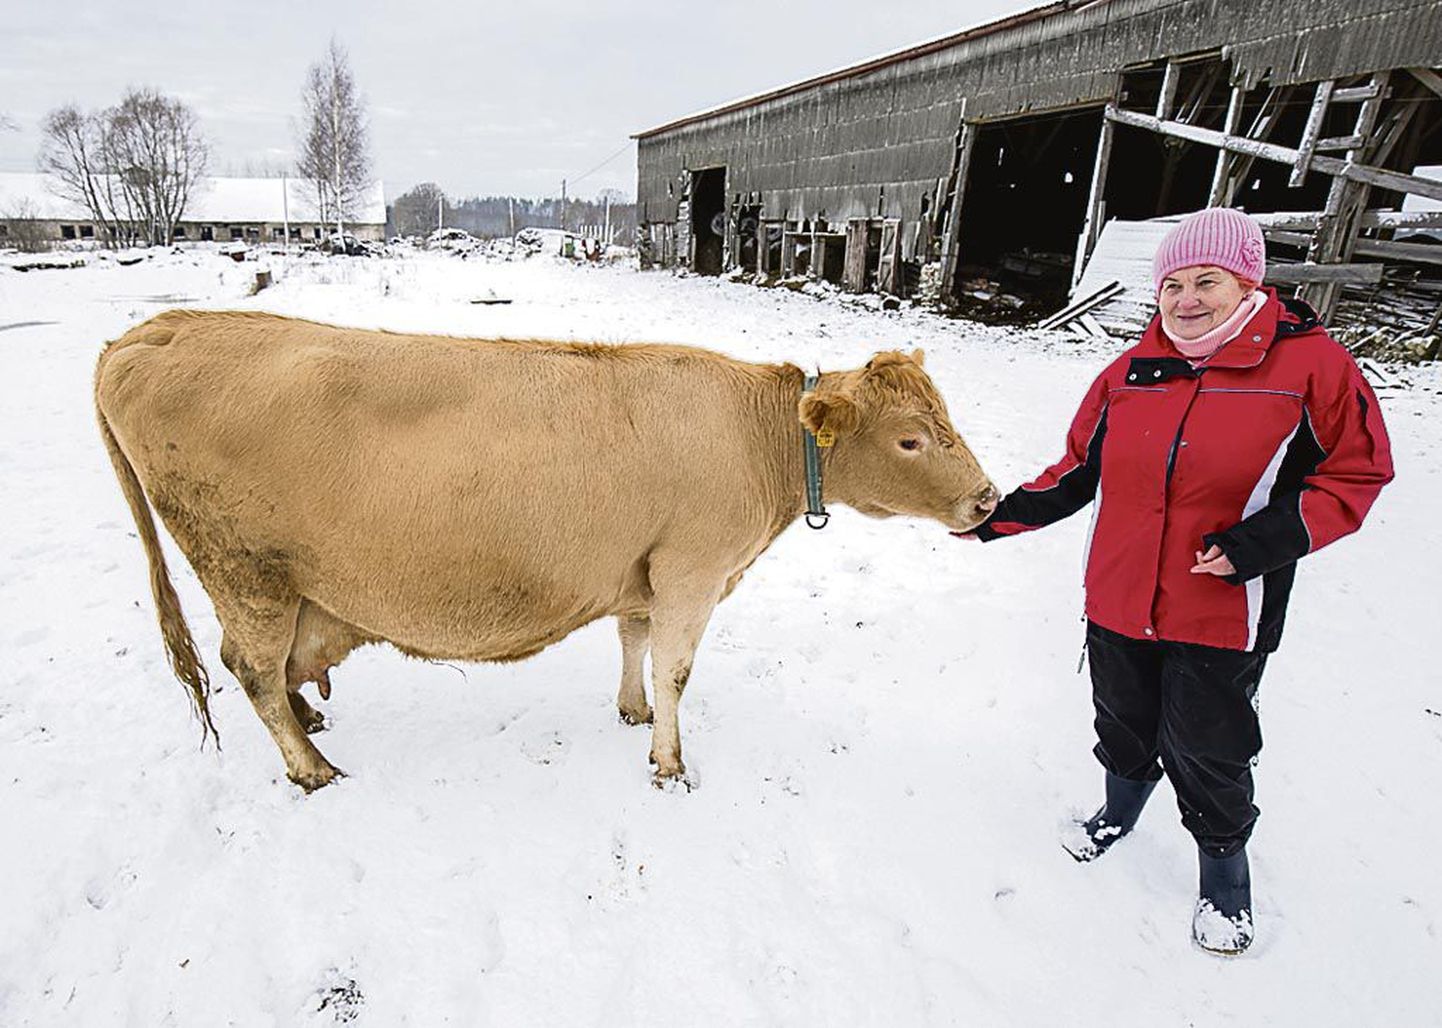 Eesti maaveise ühingu juhatuse esimees Malle Unt koos viimase päästetud loomaga, kes on üks karja kauneimaid.